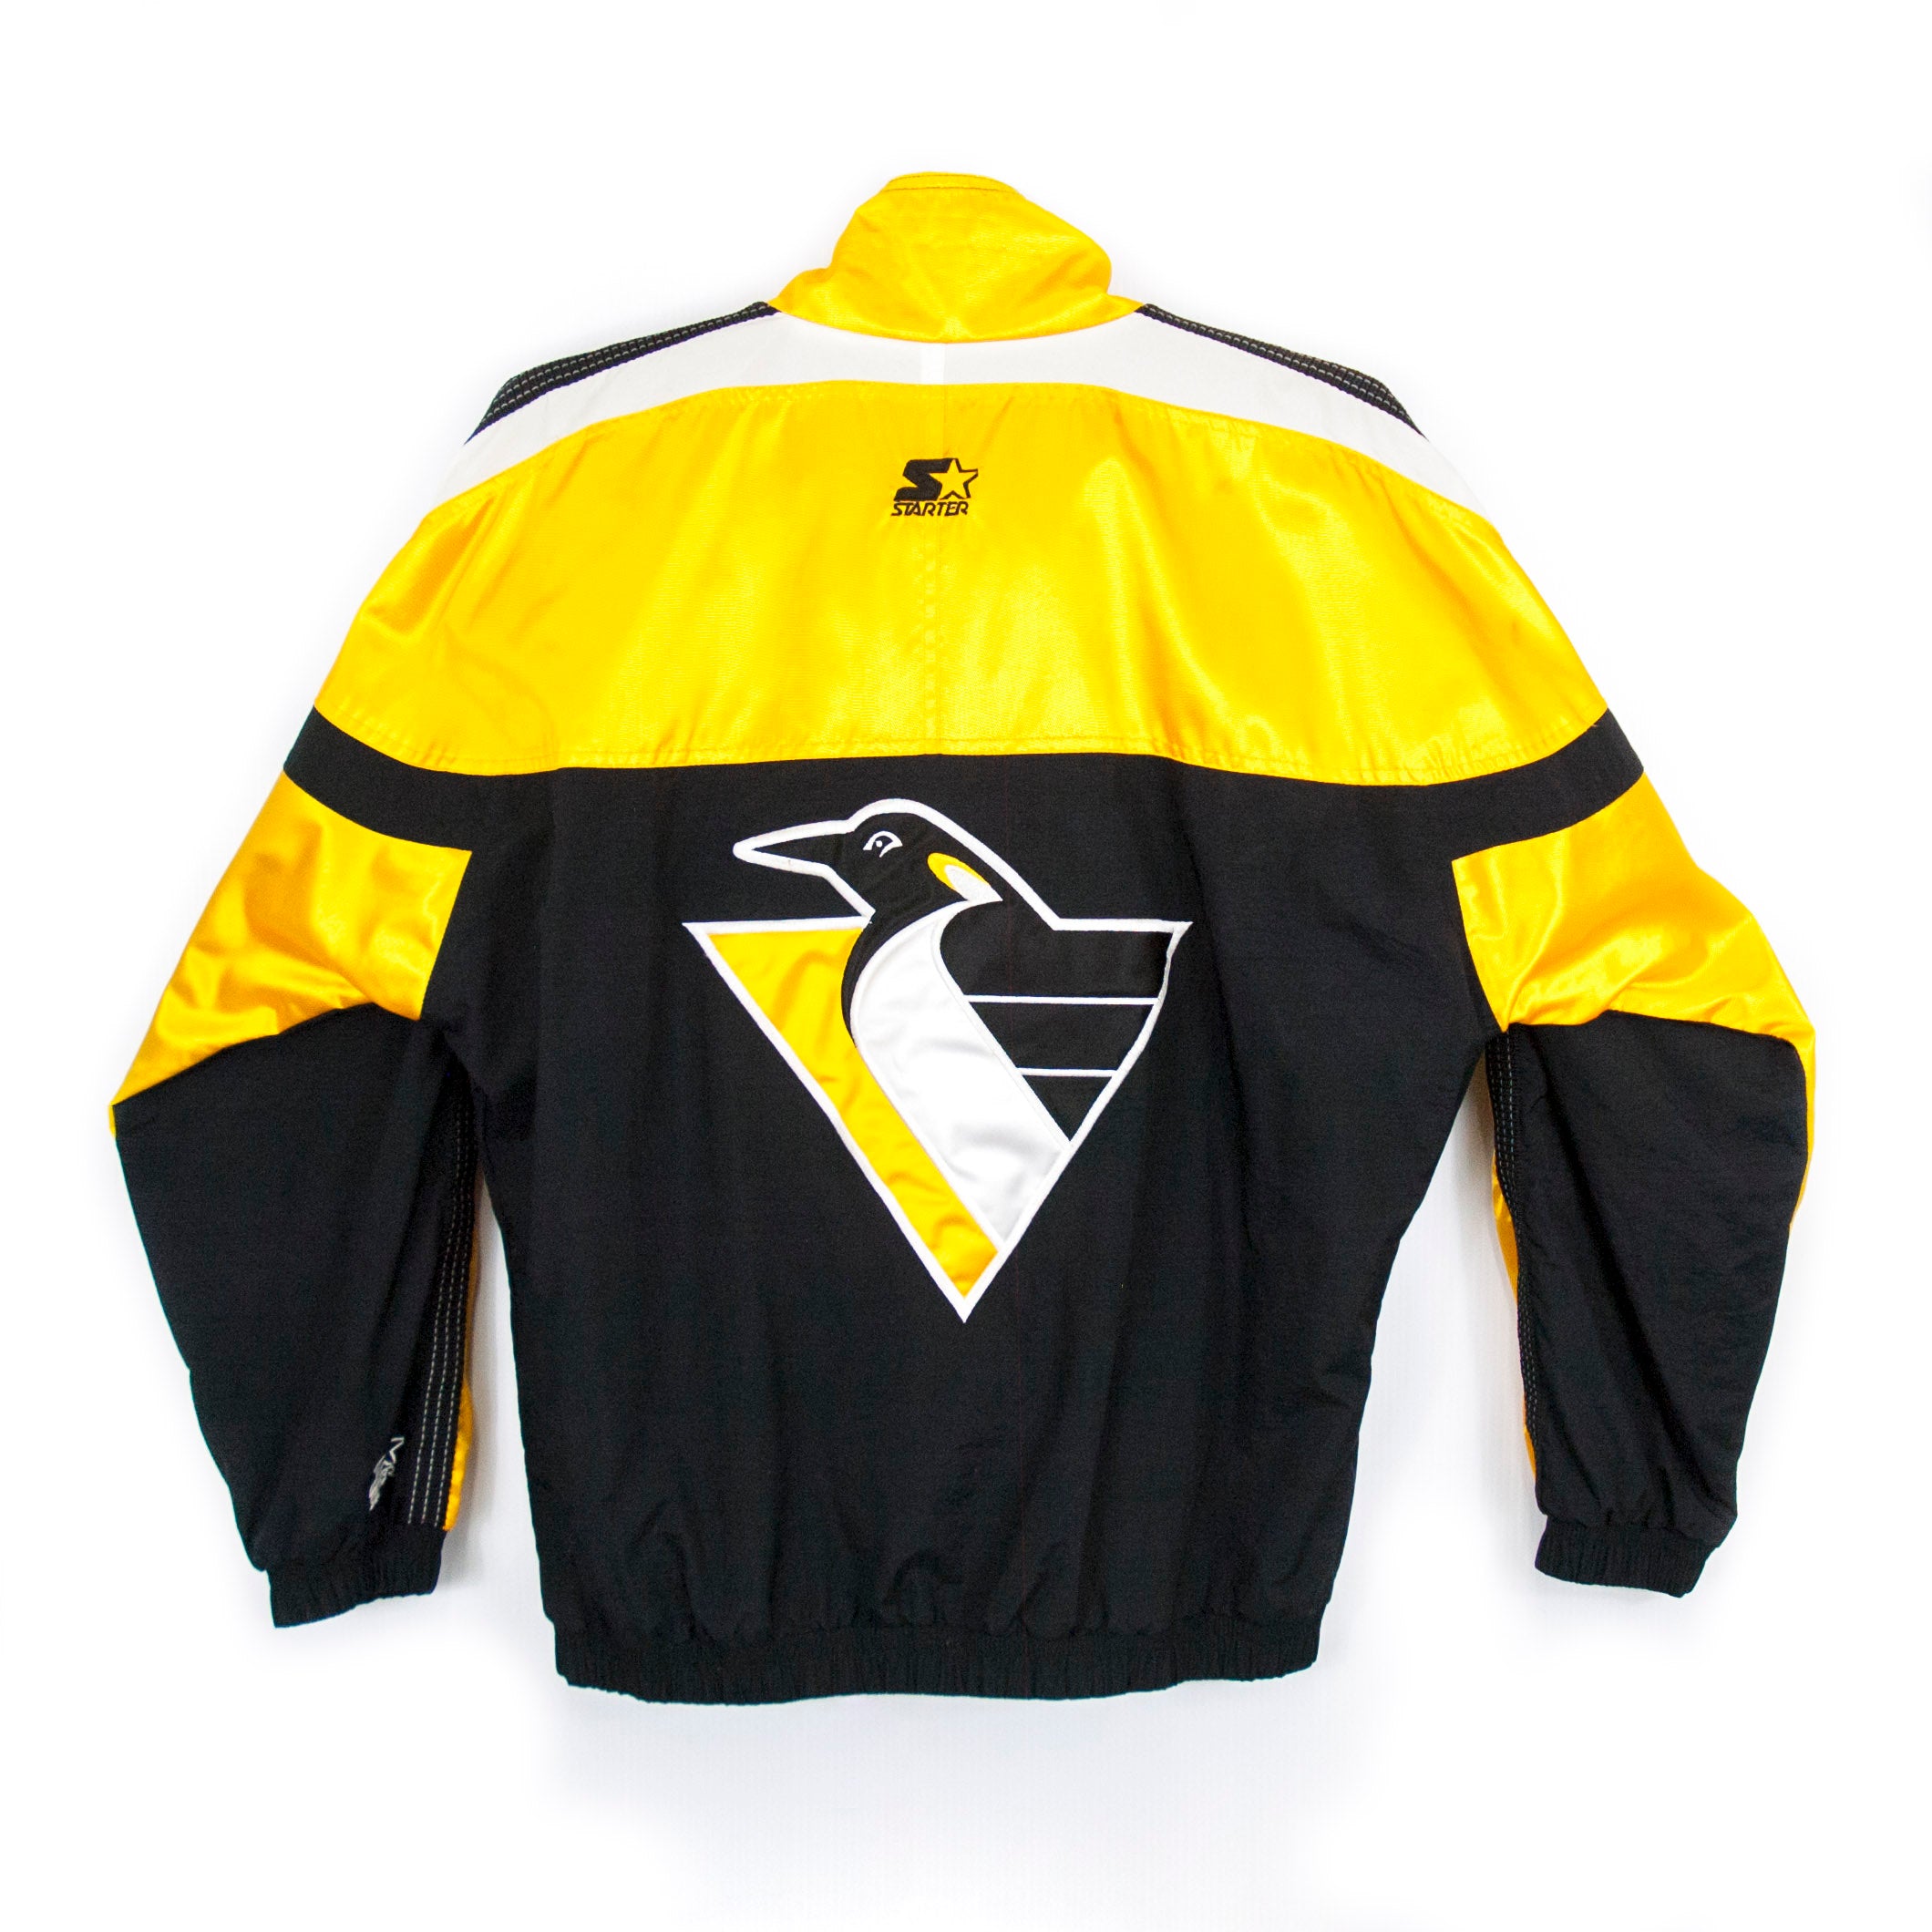 Nike Pittsburgh Penguins 90's NHL Vintage Boomber Jacket.